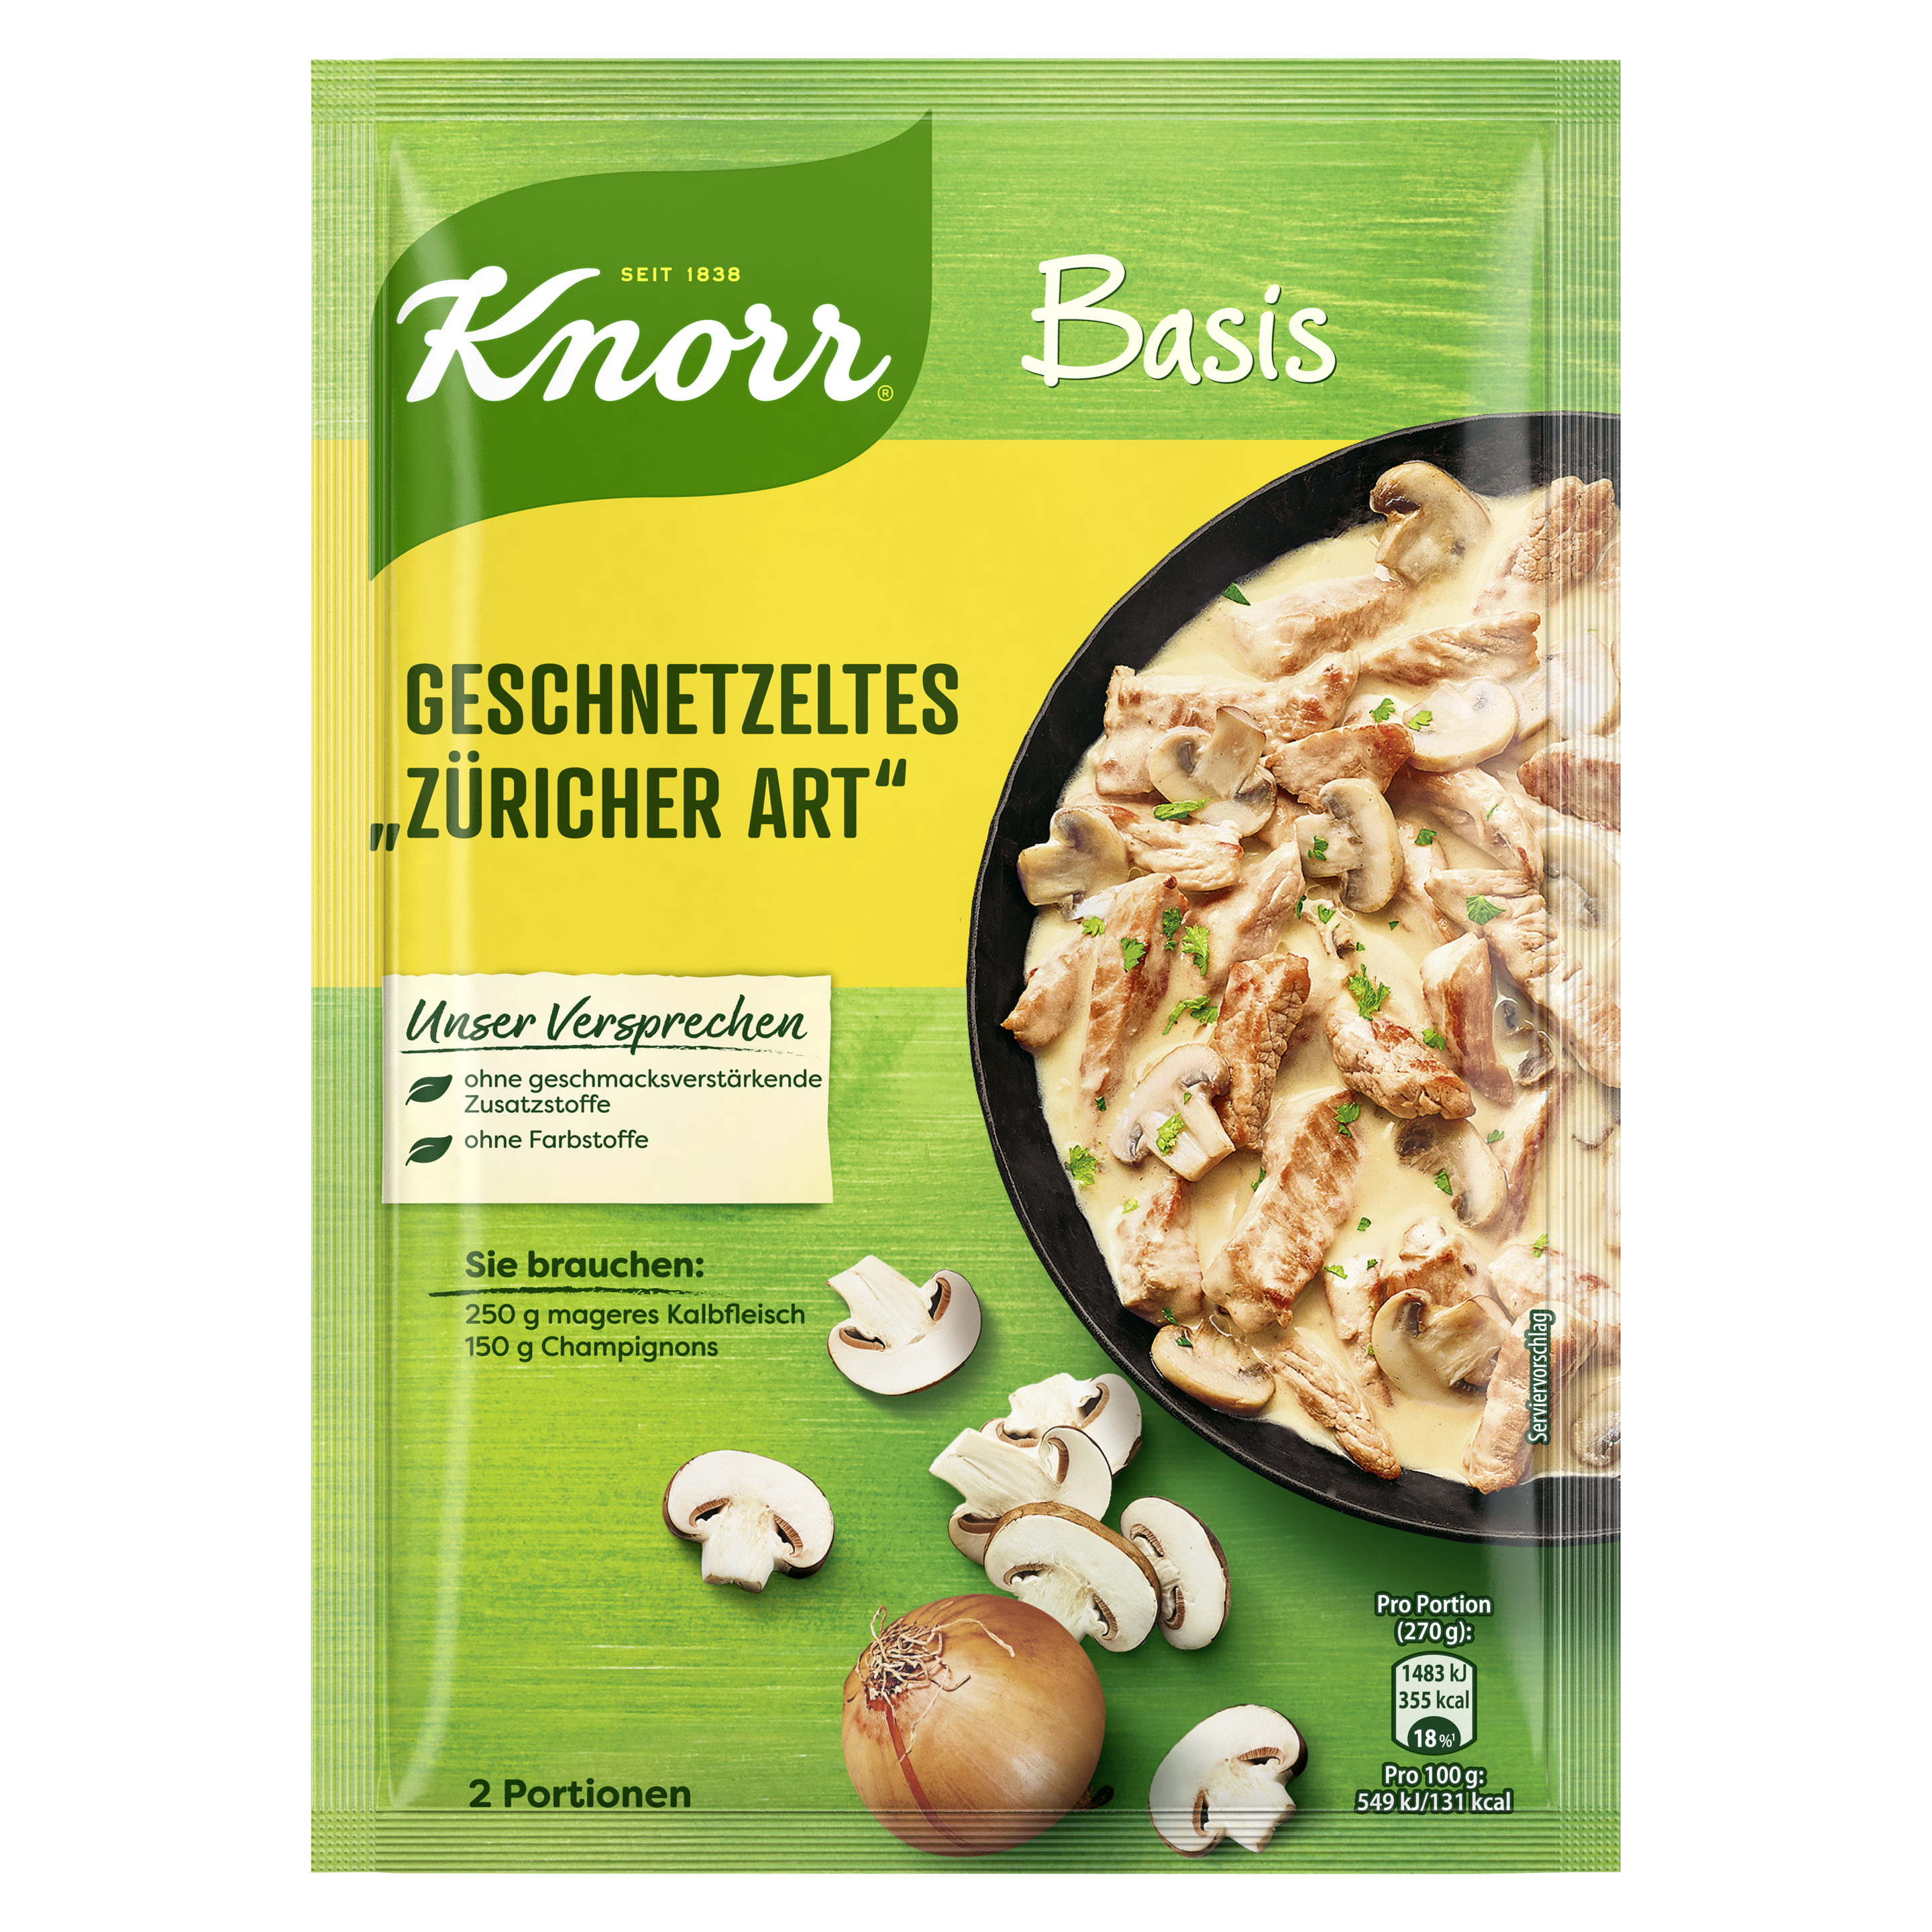 Knorr Basis Geschnetzeltes "Züricher Art" 2 Portionen